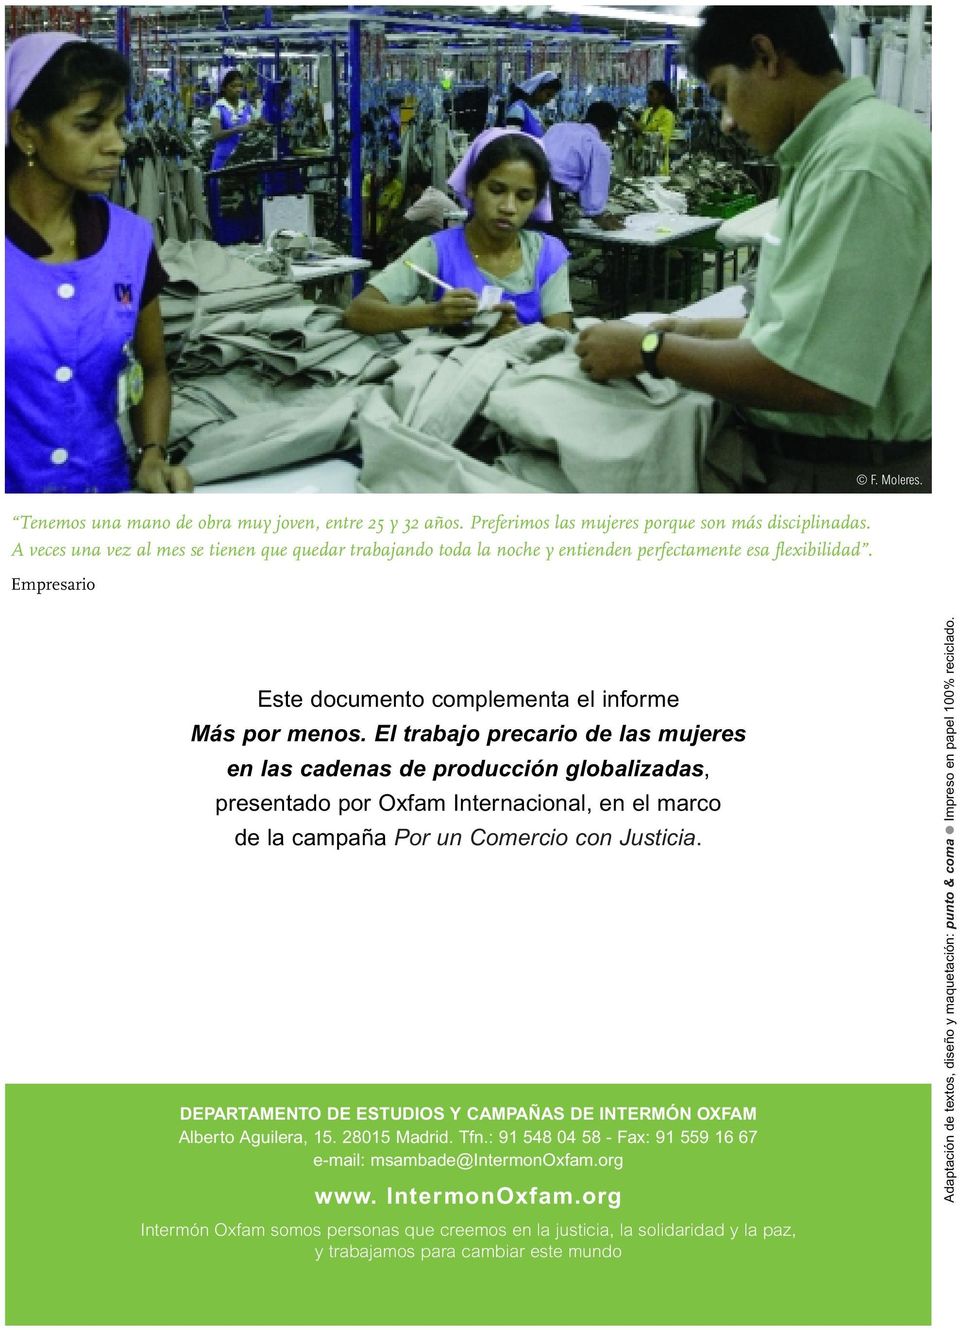 El trabajo precario de las mujeres en las cadenas de producción globalizadas, presentado por Oxfam Internacional, en el marco de la campaña Por un Comercio con Justicia.